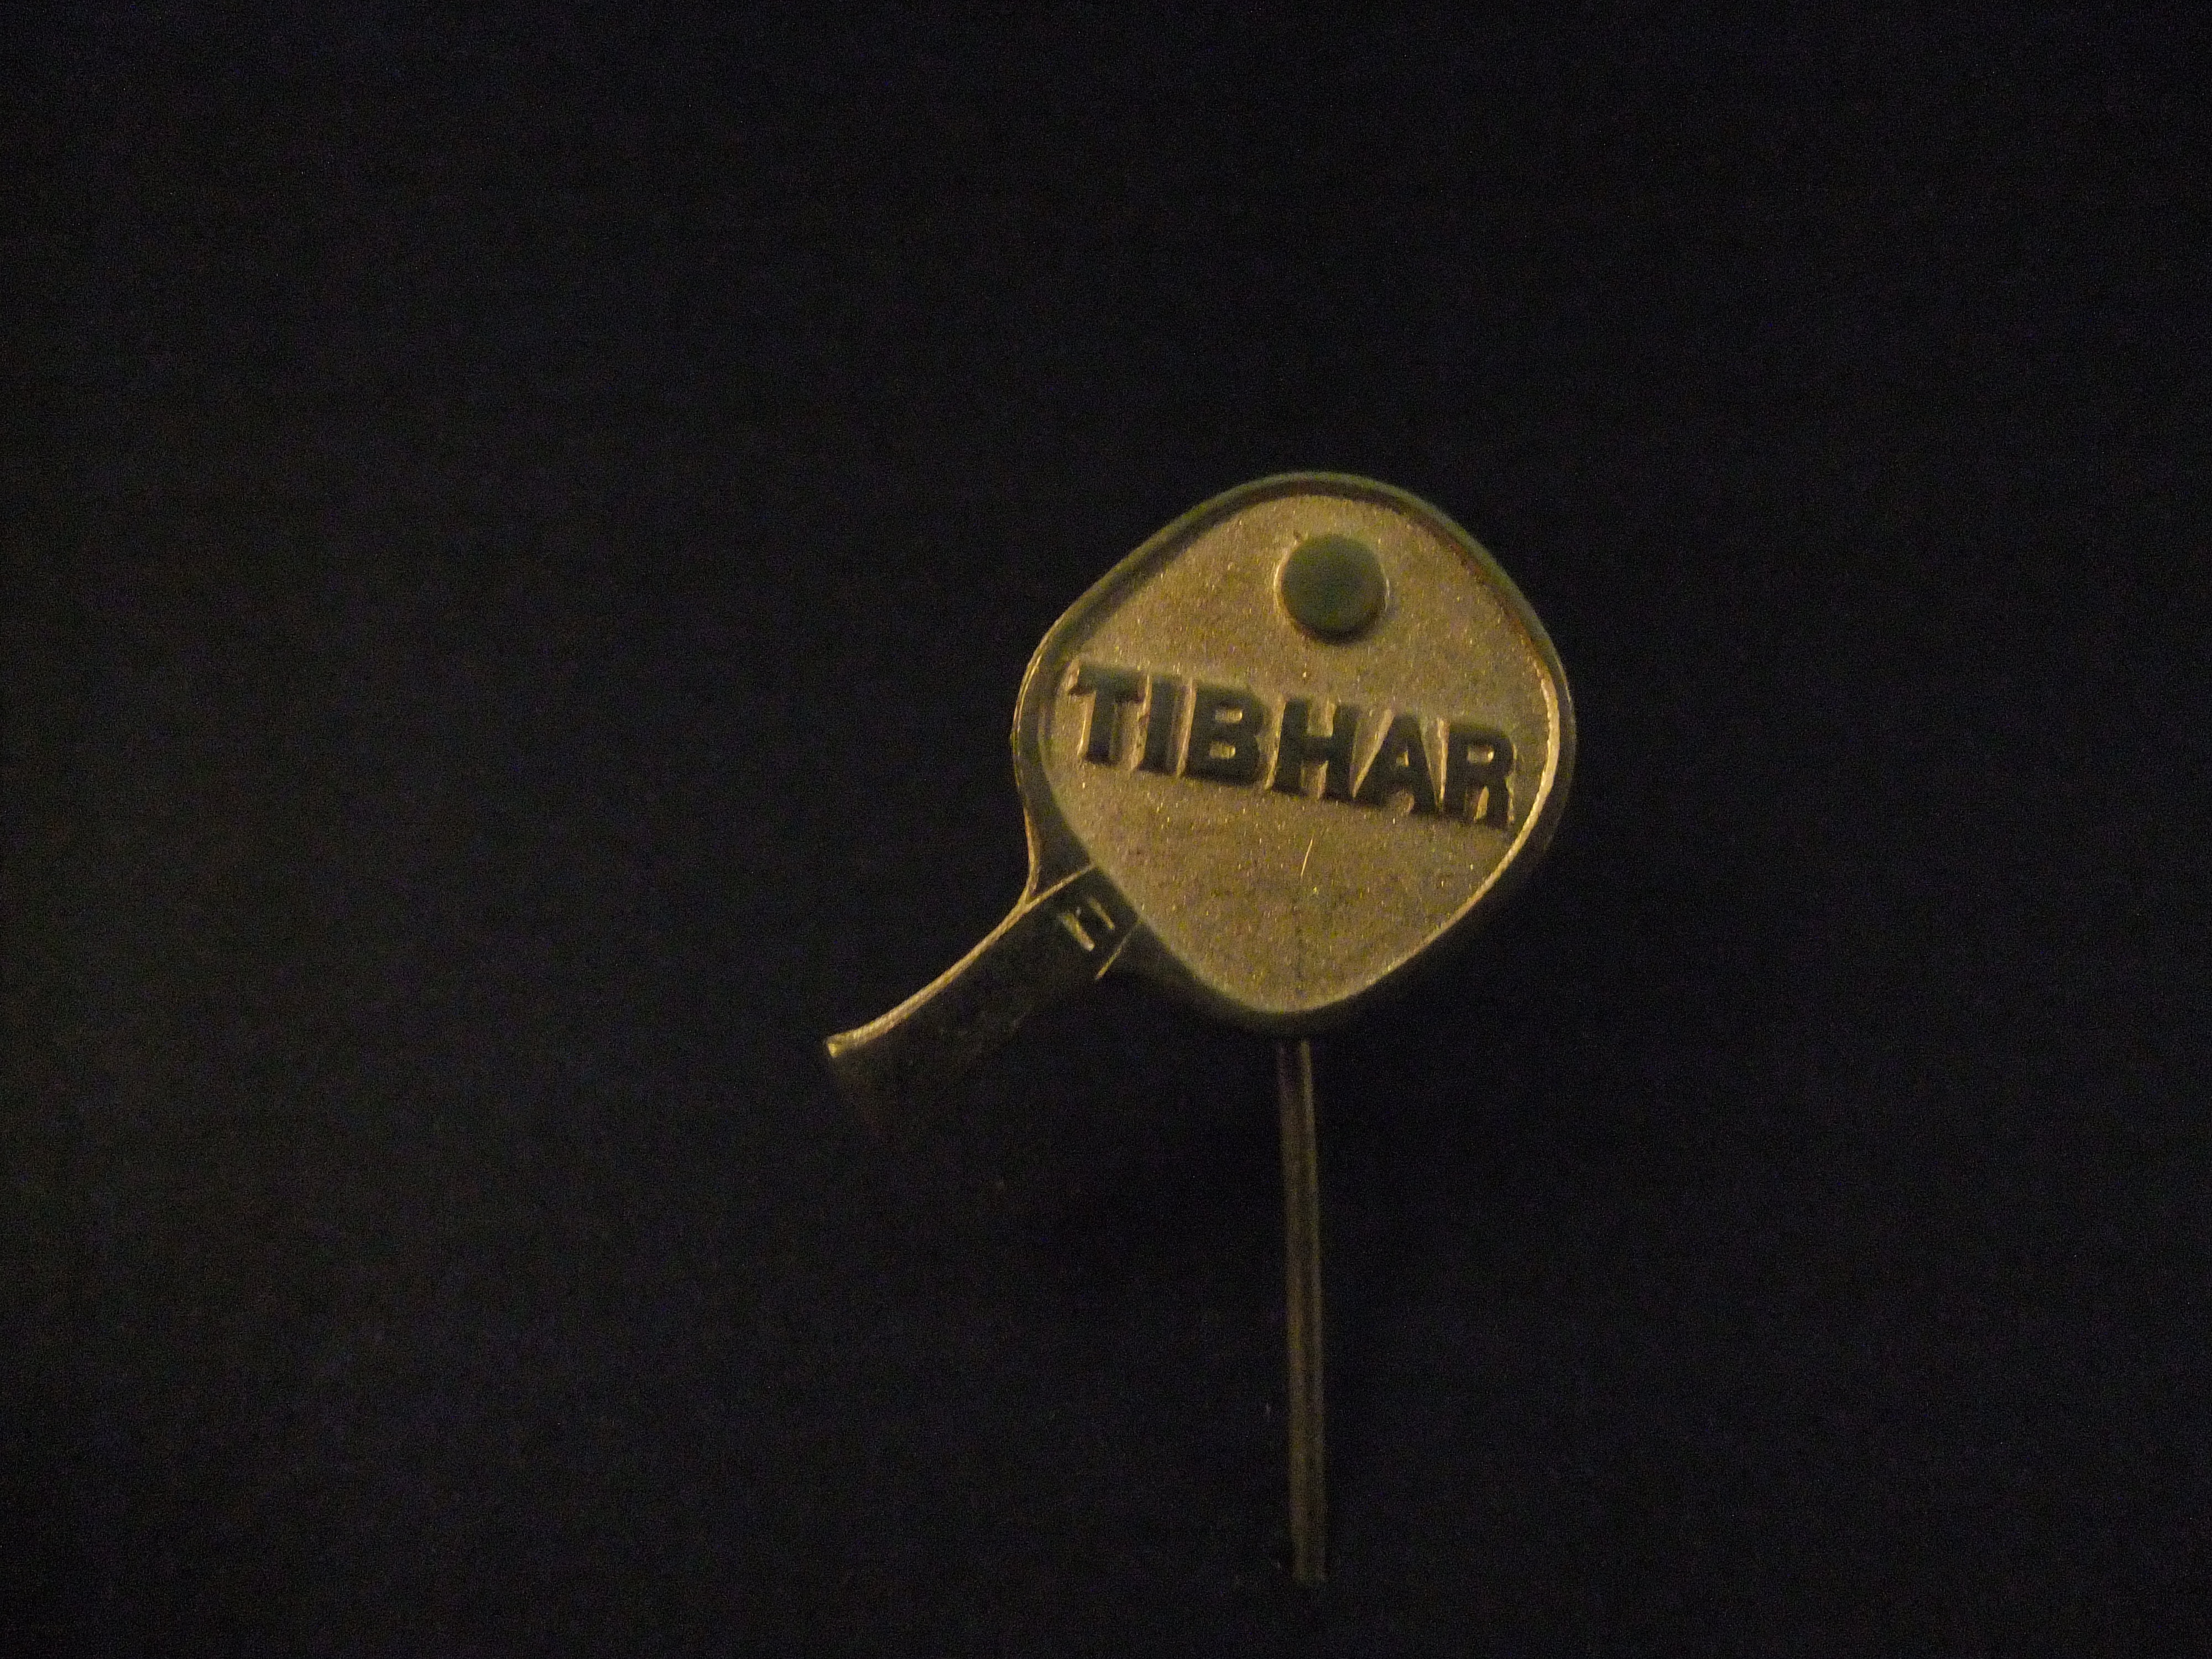 Tibhar Duitse fabrikant van sportartikelen ( tafeltennis) creme